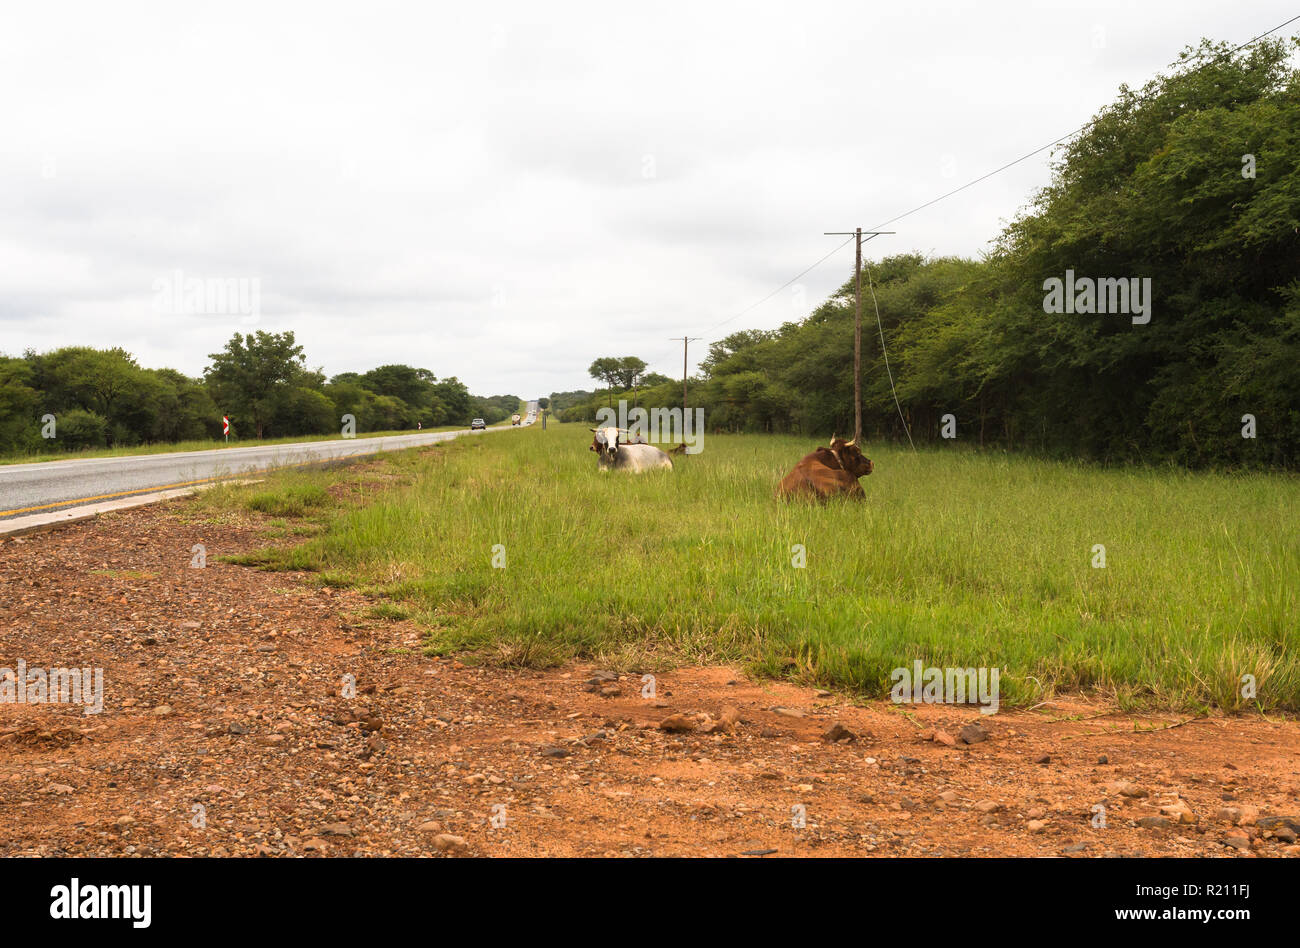 Les bovins africains ou les vaches gisant au bord d'une route goudronnée occupé dans l'herbe verte dans le nord de l'Afrique du Sud Banque D'Images